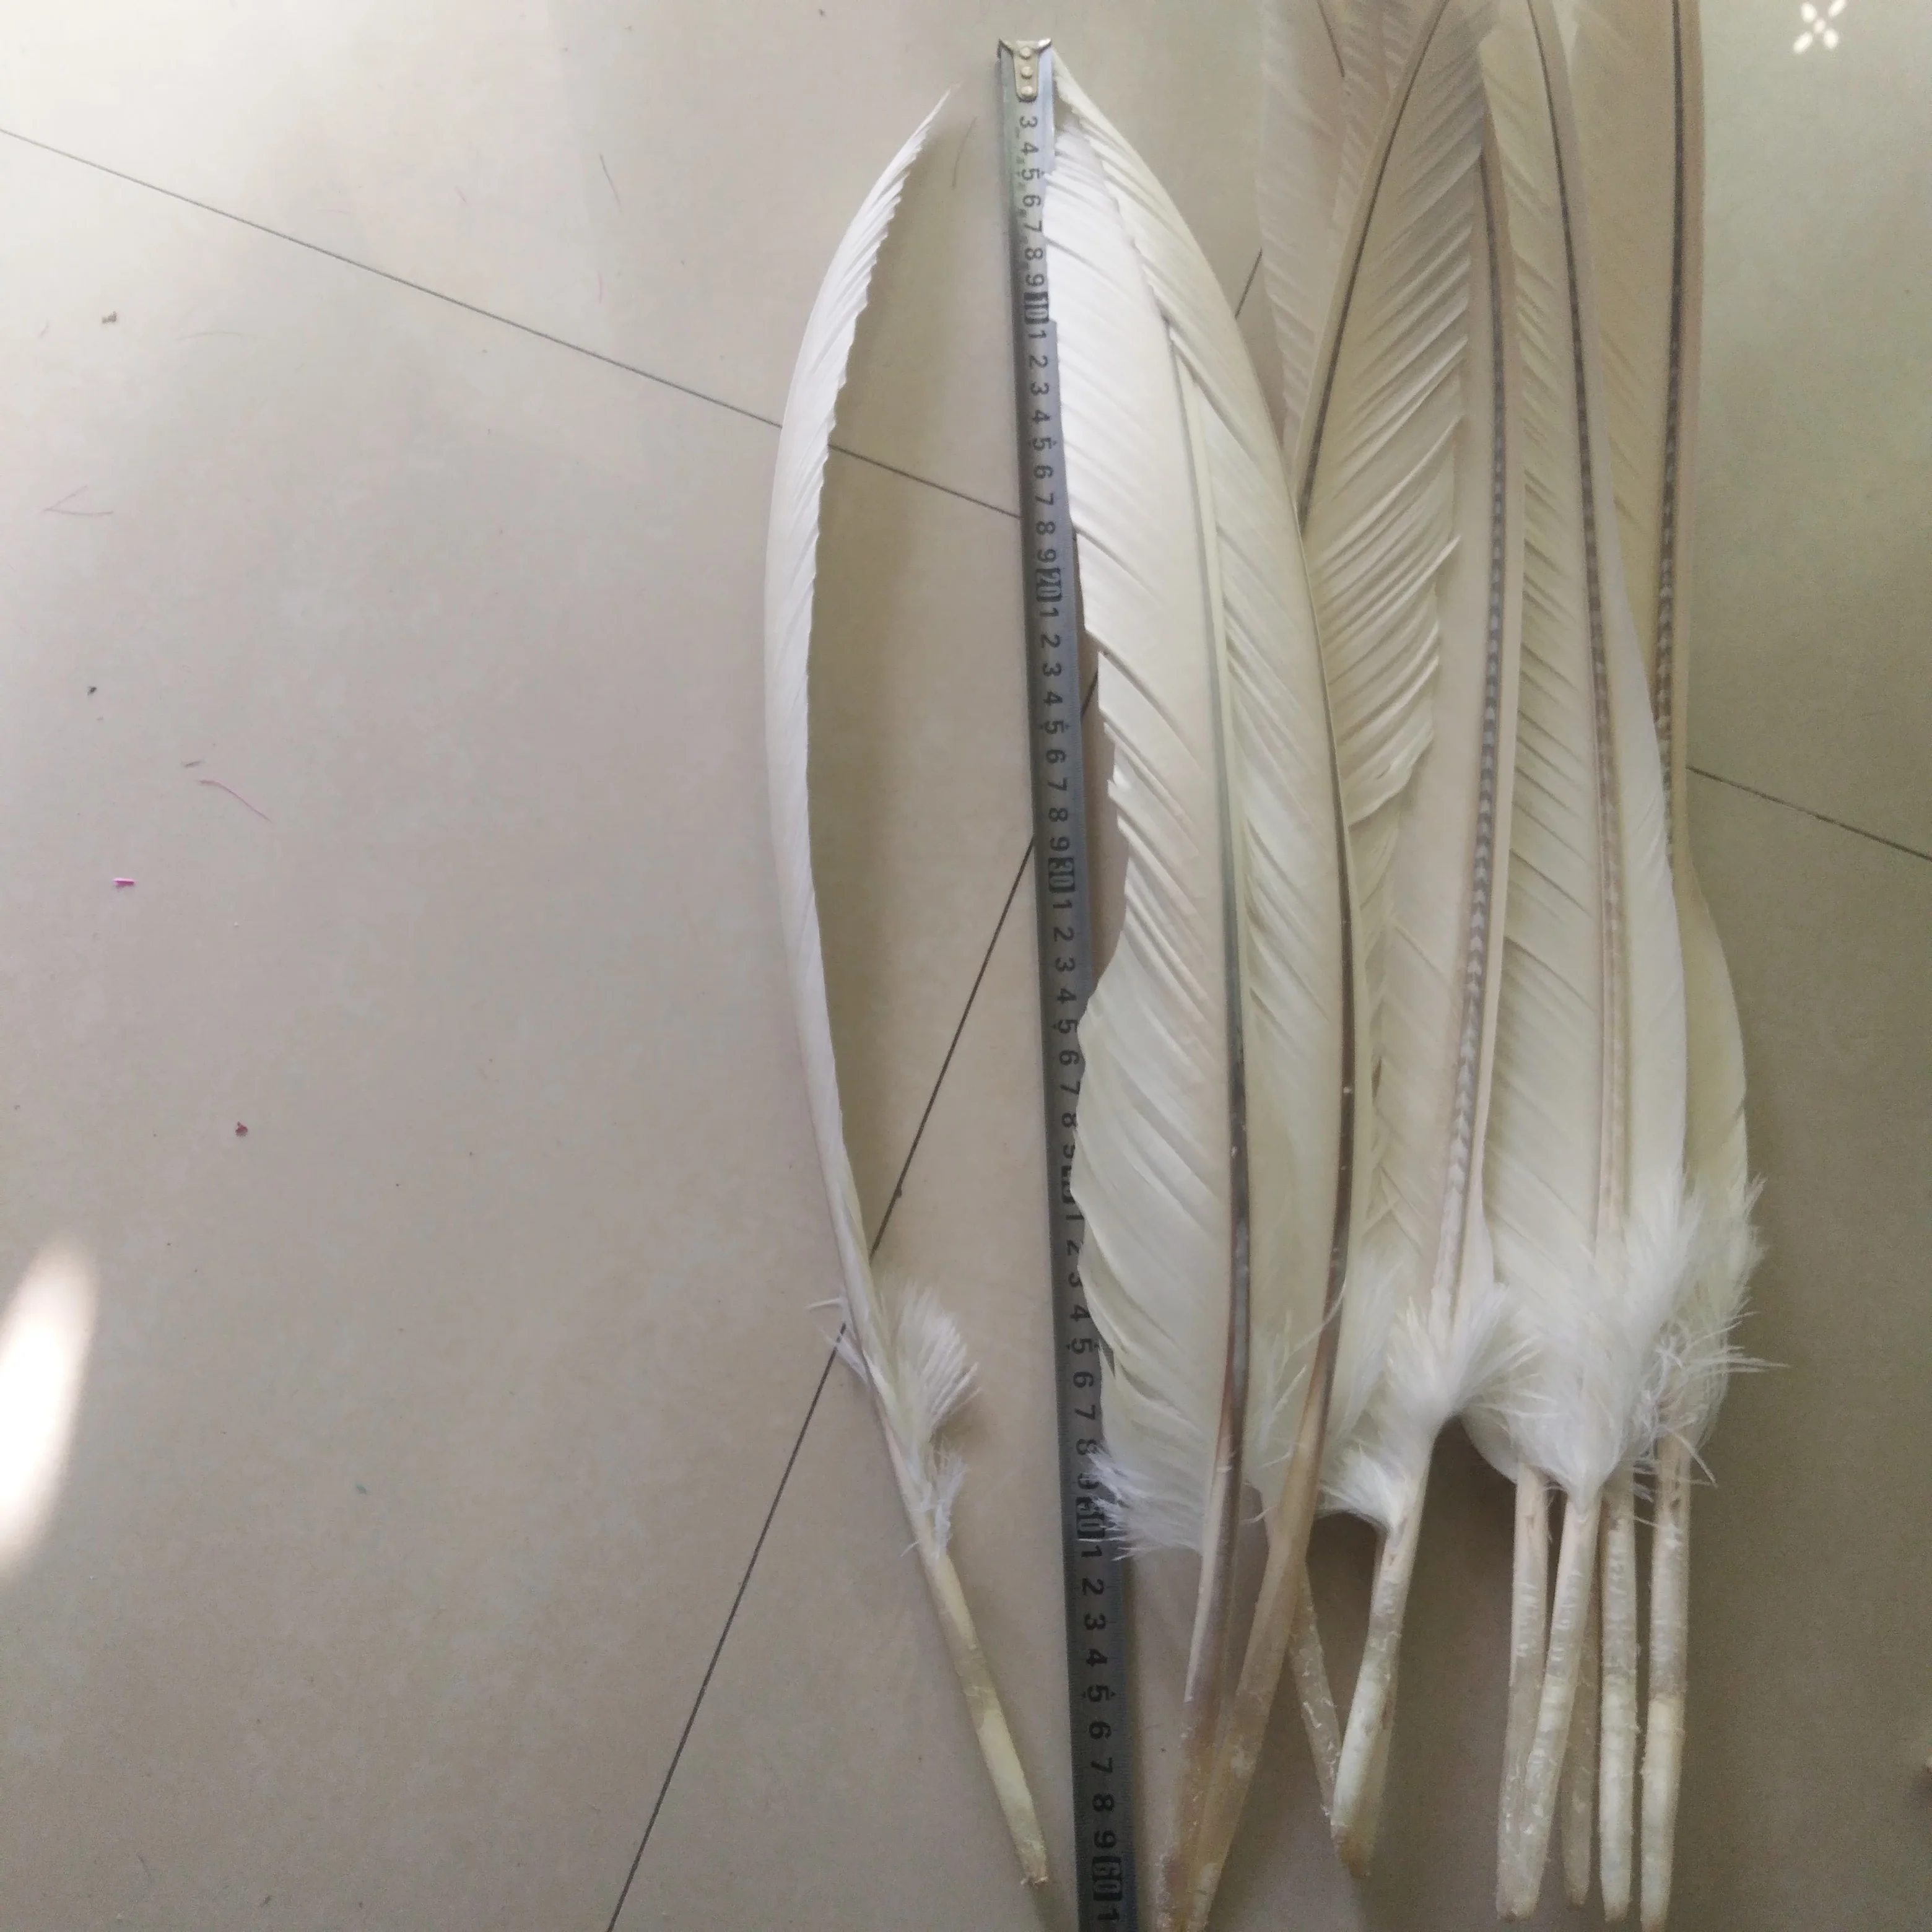 Nové!10 ks kvality white eagle perie, 20-24 cm / 50-60 cm dlhé, DIY šperky, dekorácie